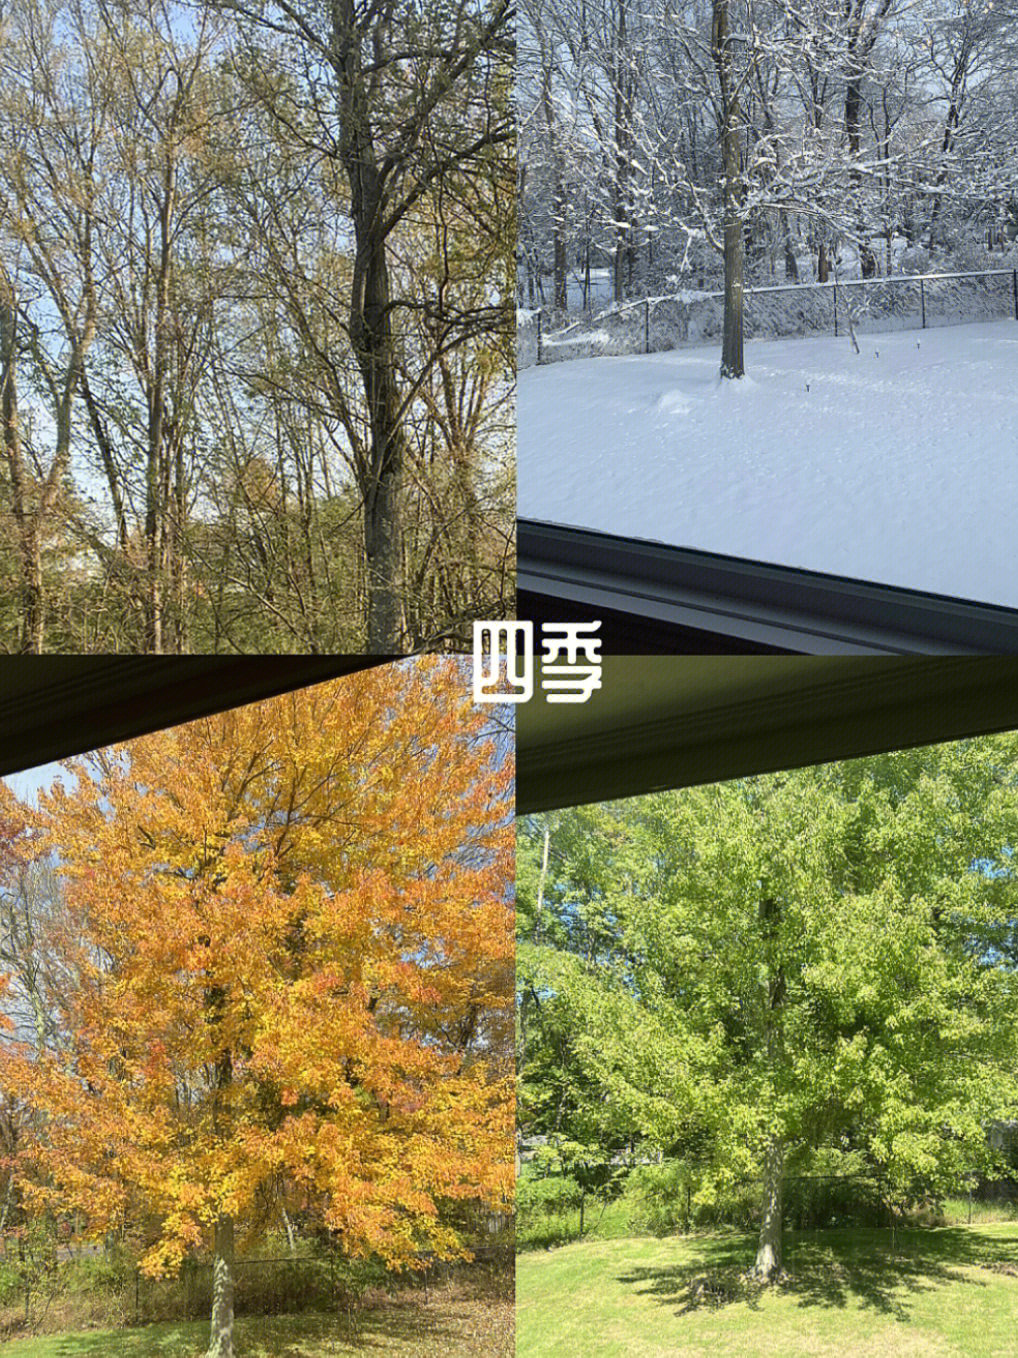 新家搬入一年,窗口记录下色彩变幻的春夏秋冬